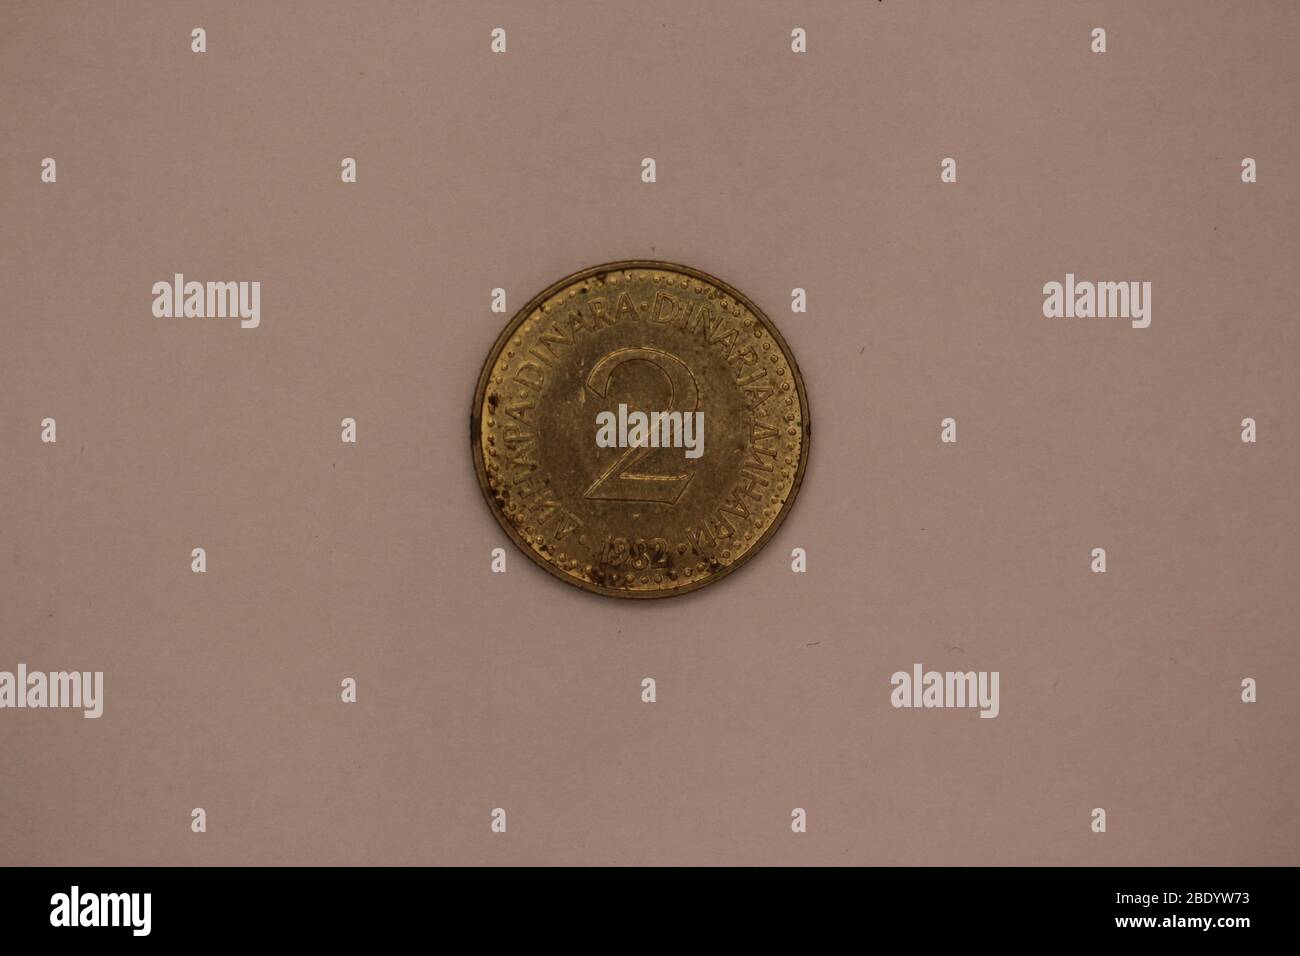 Großaufnahme einer ehemaligen Jugoslawischen 2 Dinar Münze Stock Photo